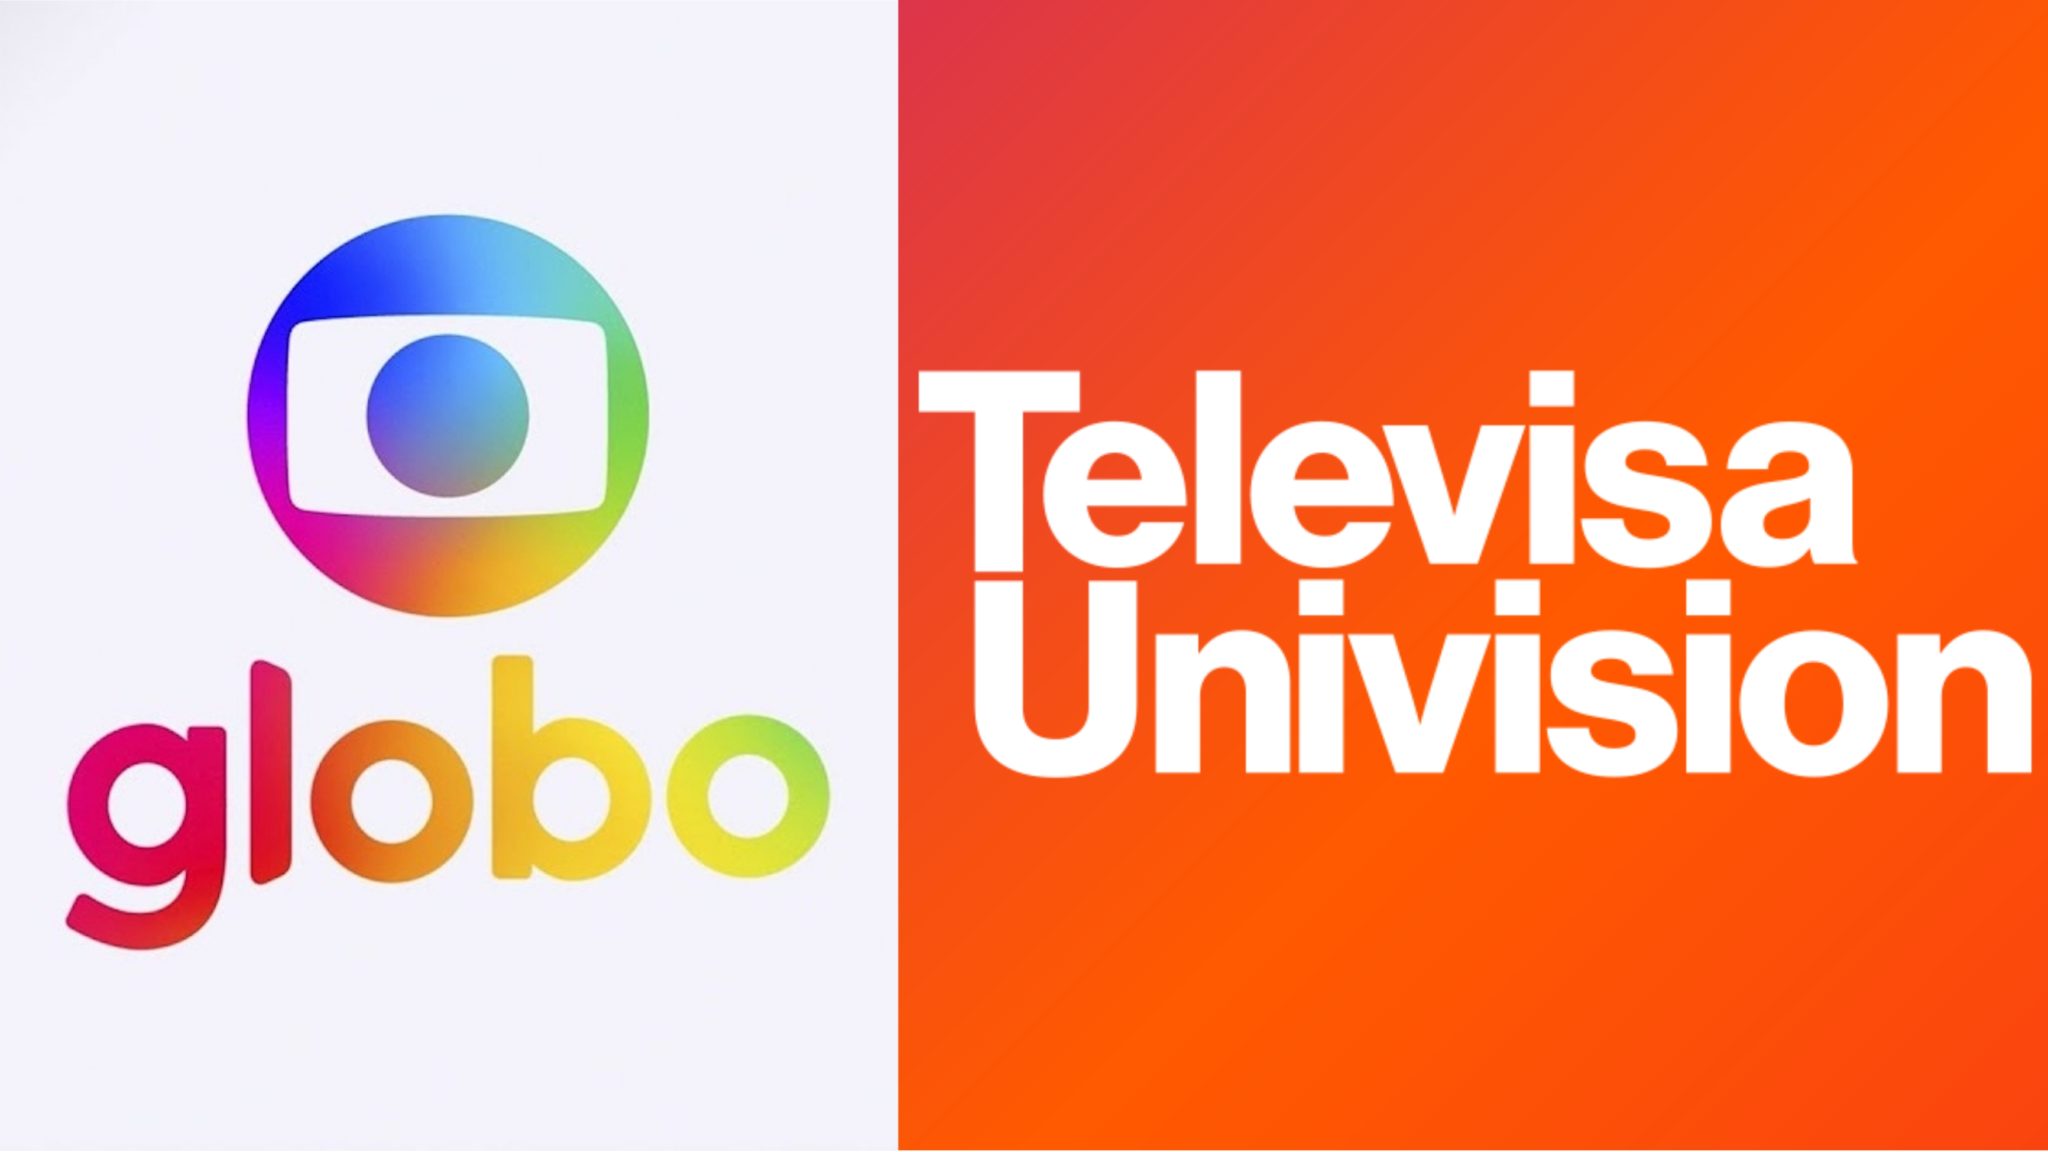 Globoplay lançará mais uma série da TelevisaUnivision